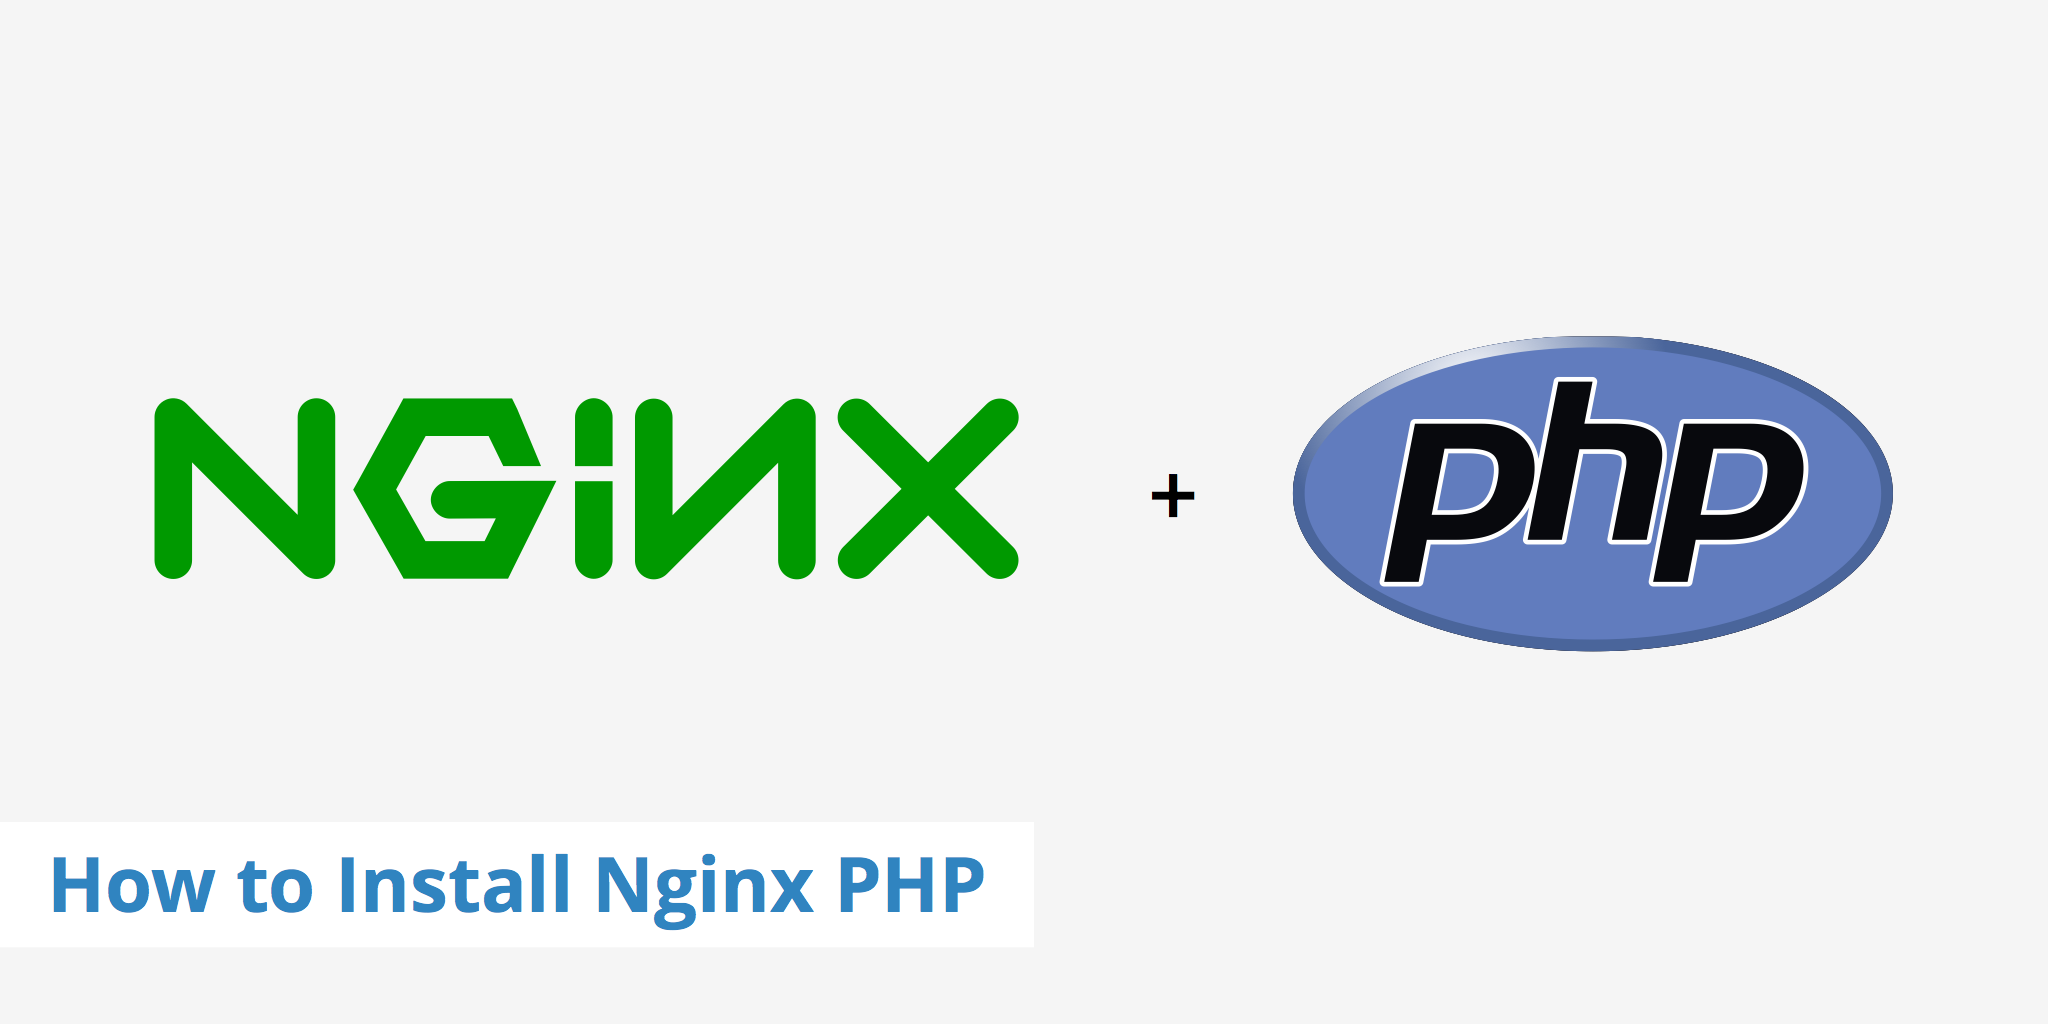 构建docker镜像，将nginx与php环境放在一个镜像中